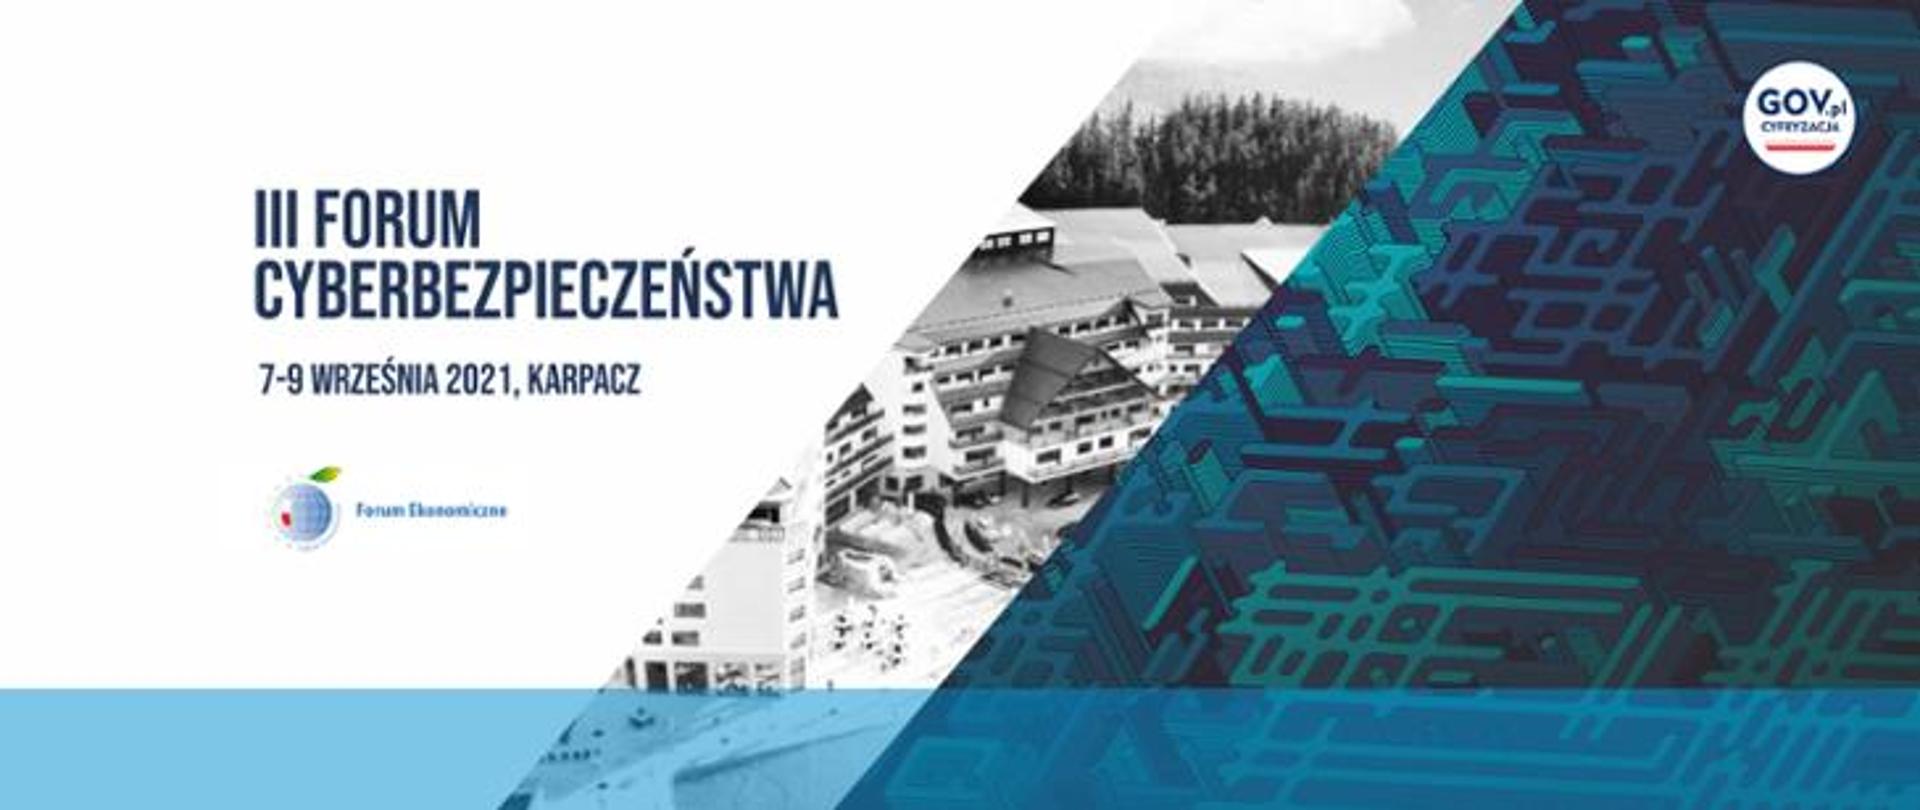 Baner wydarzenia z napisem II Forum Cyberbezpieczeństwa 7-9września Karpacz